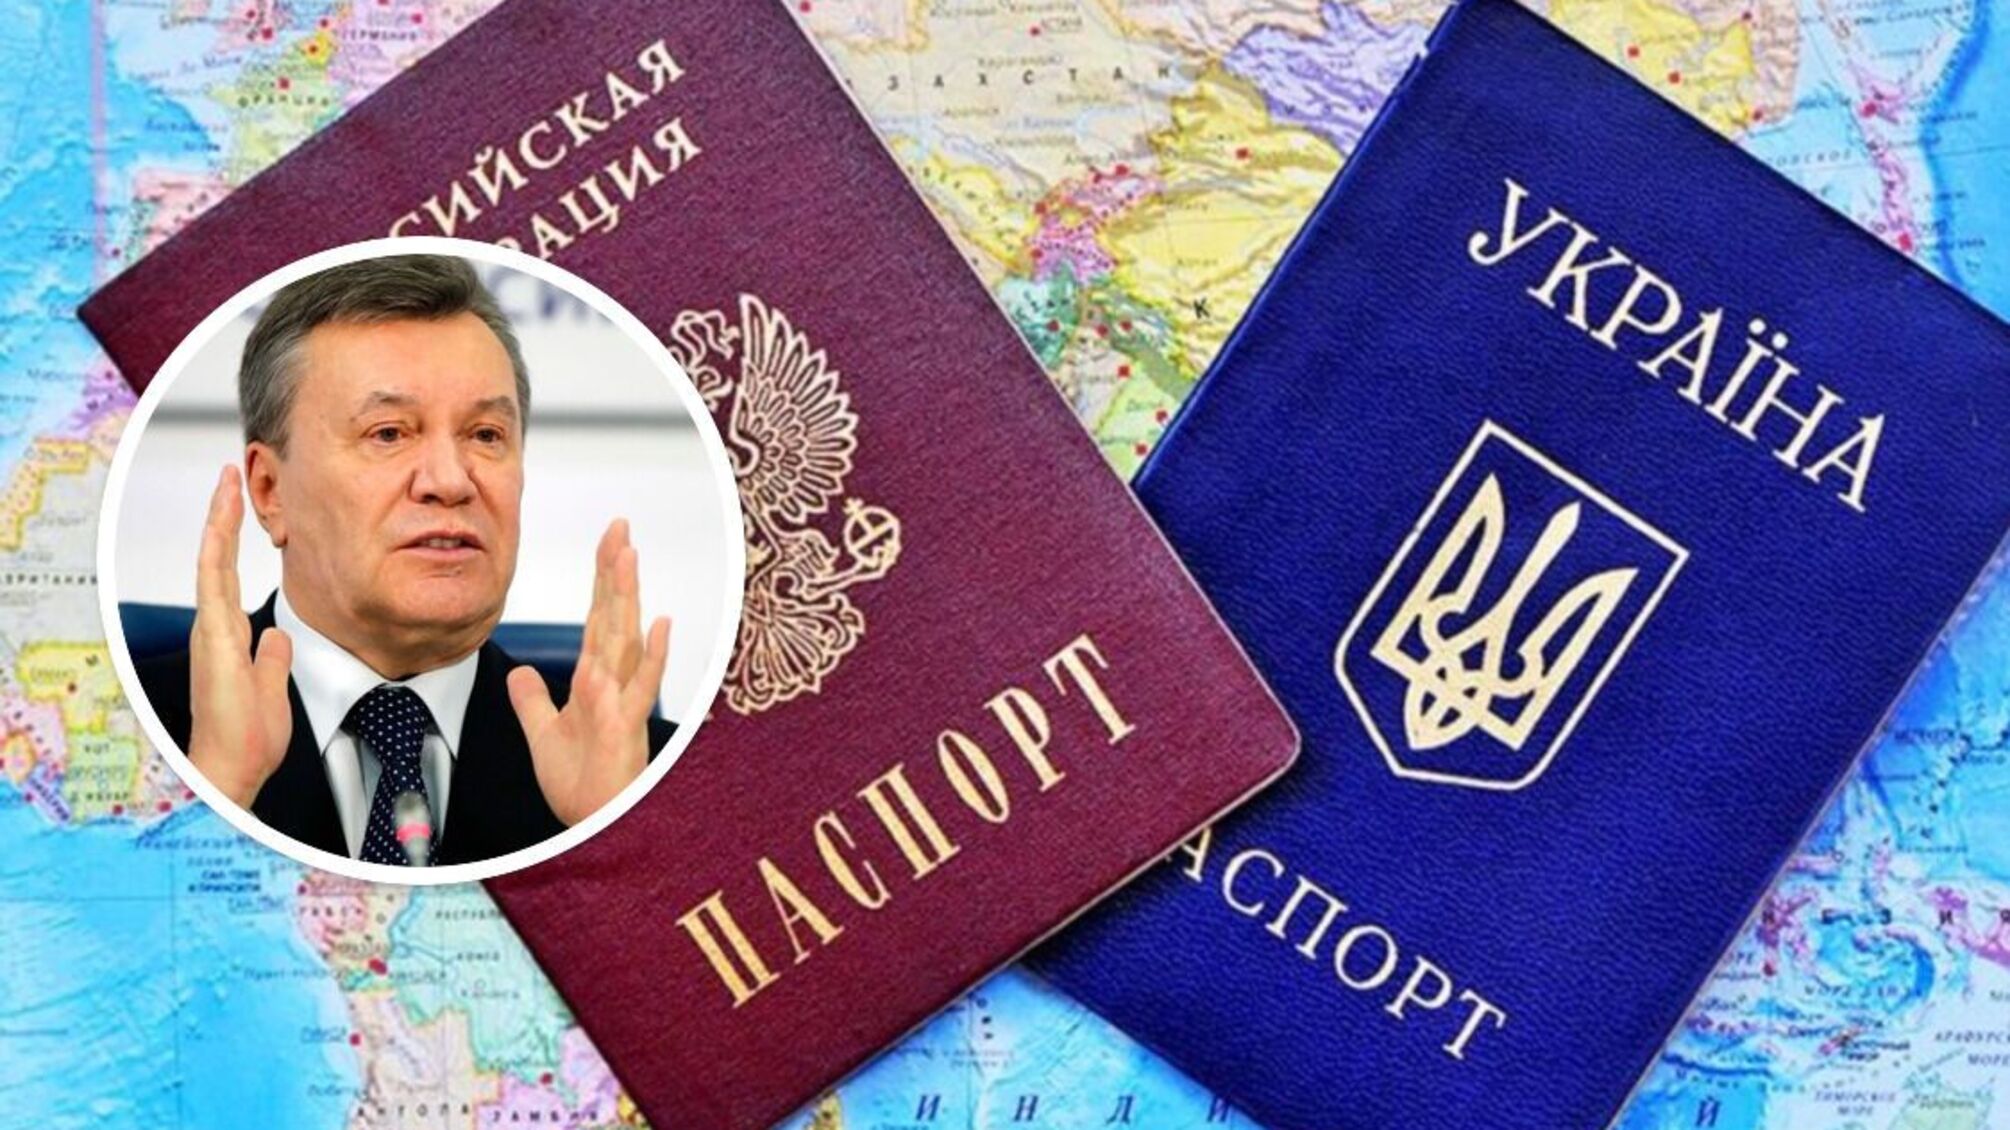 Табачник, Клименко, Захарченко, братья Клюевы будут лишены гражданства Украины - что известно